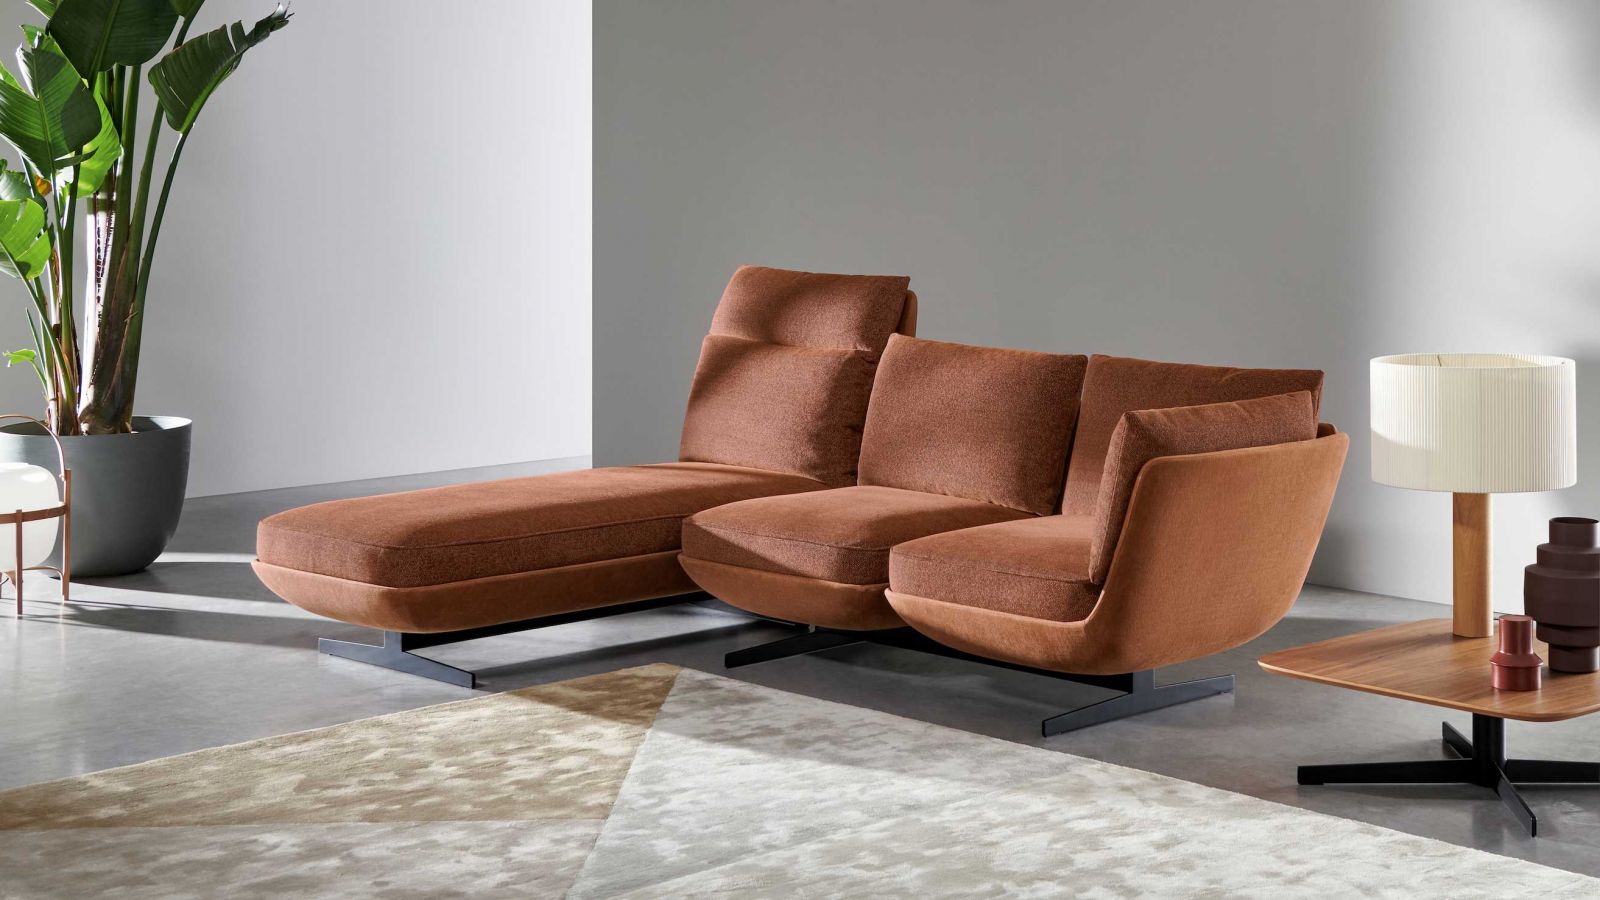 Eine Schalenform, die den Körper weich umschliesst, ist das Gestaltungsmerkmal der Kollektion «Biggie» von Luca Nichetto. Sie umfasst neben einem Sessel und einem Bett auch dieses modulare Sofa, bei dem die unterschiedlichen, weich gepolsterten Sitzschalen auf einer zentralen Stange beliebig nebeneinander positioniert werden können. TWILS.IT